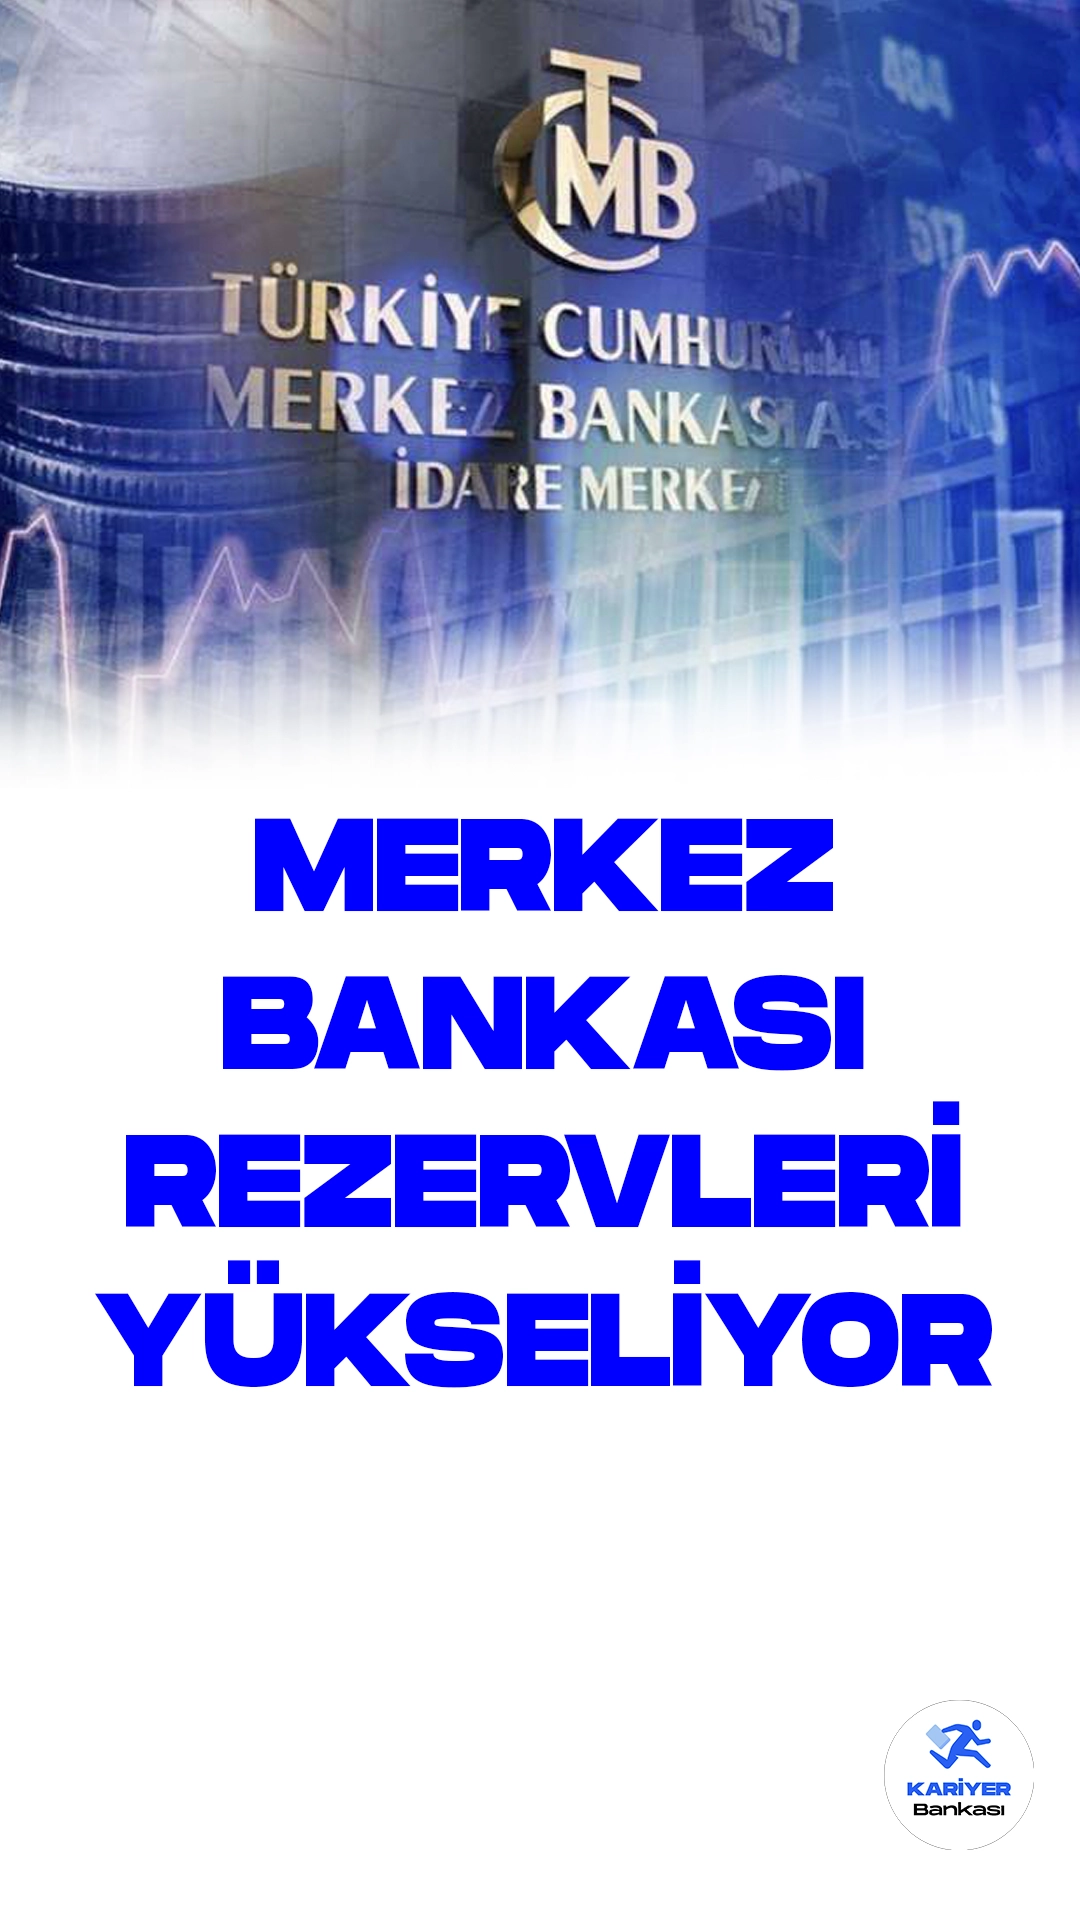 Merkez Bankası'nın Toplam Rezervleri 7. Haftada Artarak 115.6 Milyar Dolara Ulaştı.Türkiye Cumhuriyet Merkez Bankası (TCMB), 4 Ağustos tarihli Haftalık Para ve Banka İstatistikleri raporunu yayımladı. Rapora göre, 4 Ağustos haftasında TCMB'nin toplam rezervleri bir önceki haftaya göre 1 milyar 817 milyon dolar artarak 115 milyar 591 milyon dolara yükseldi. Bu durum, rezervlerdeki yükseliş trendinin 7 haftayı aşan bir süreyle devam ettiğini gösterdi.